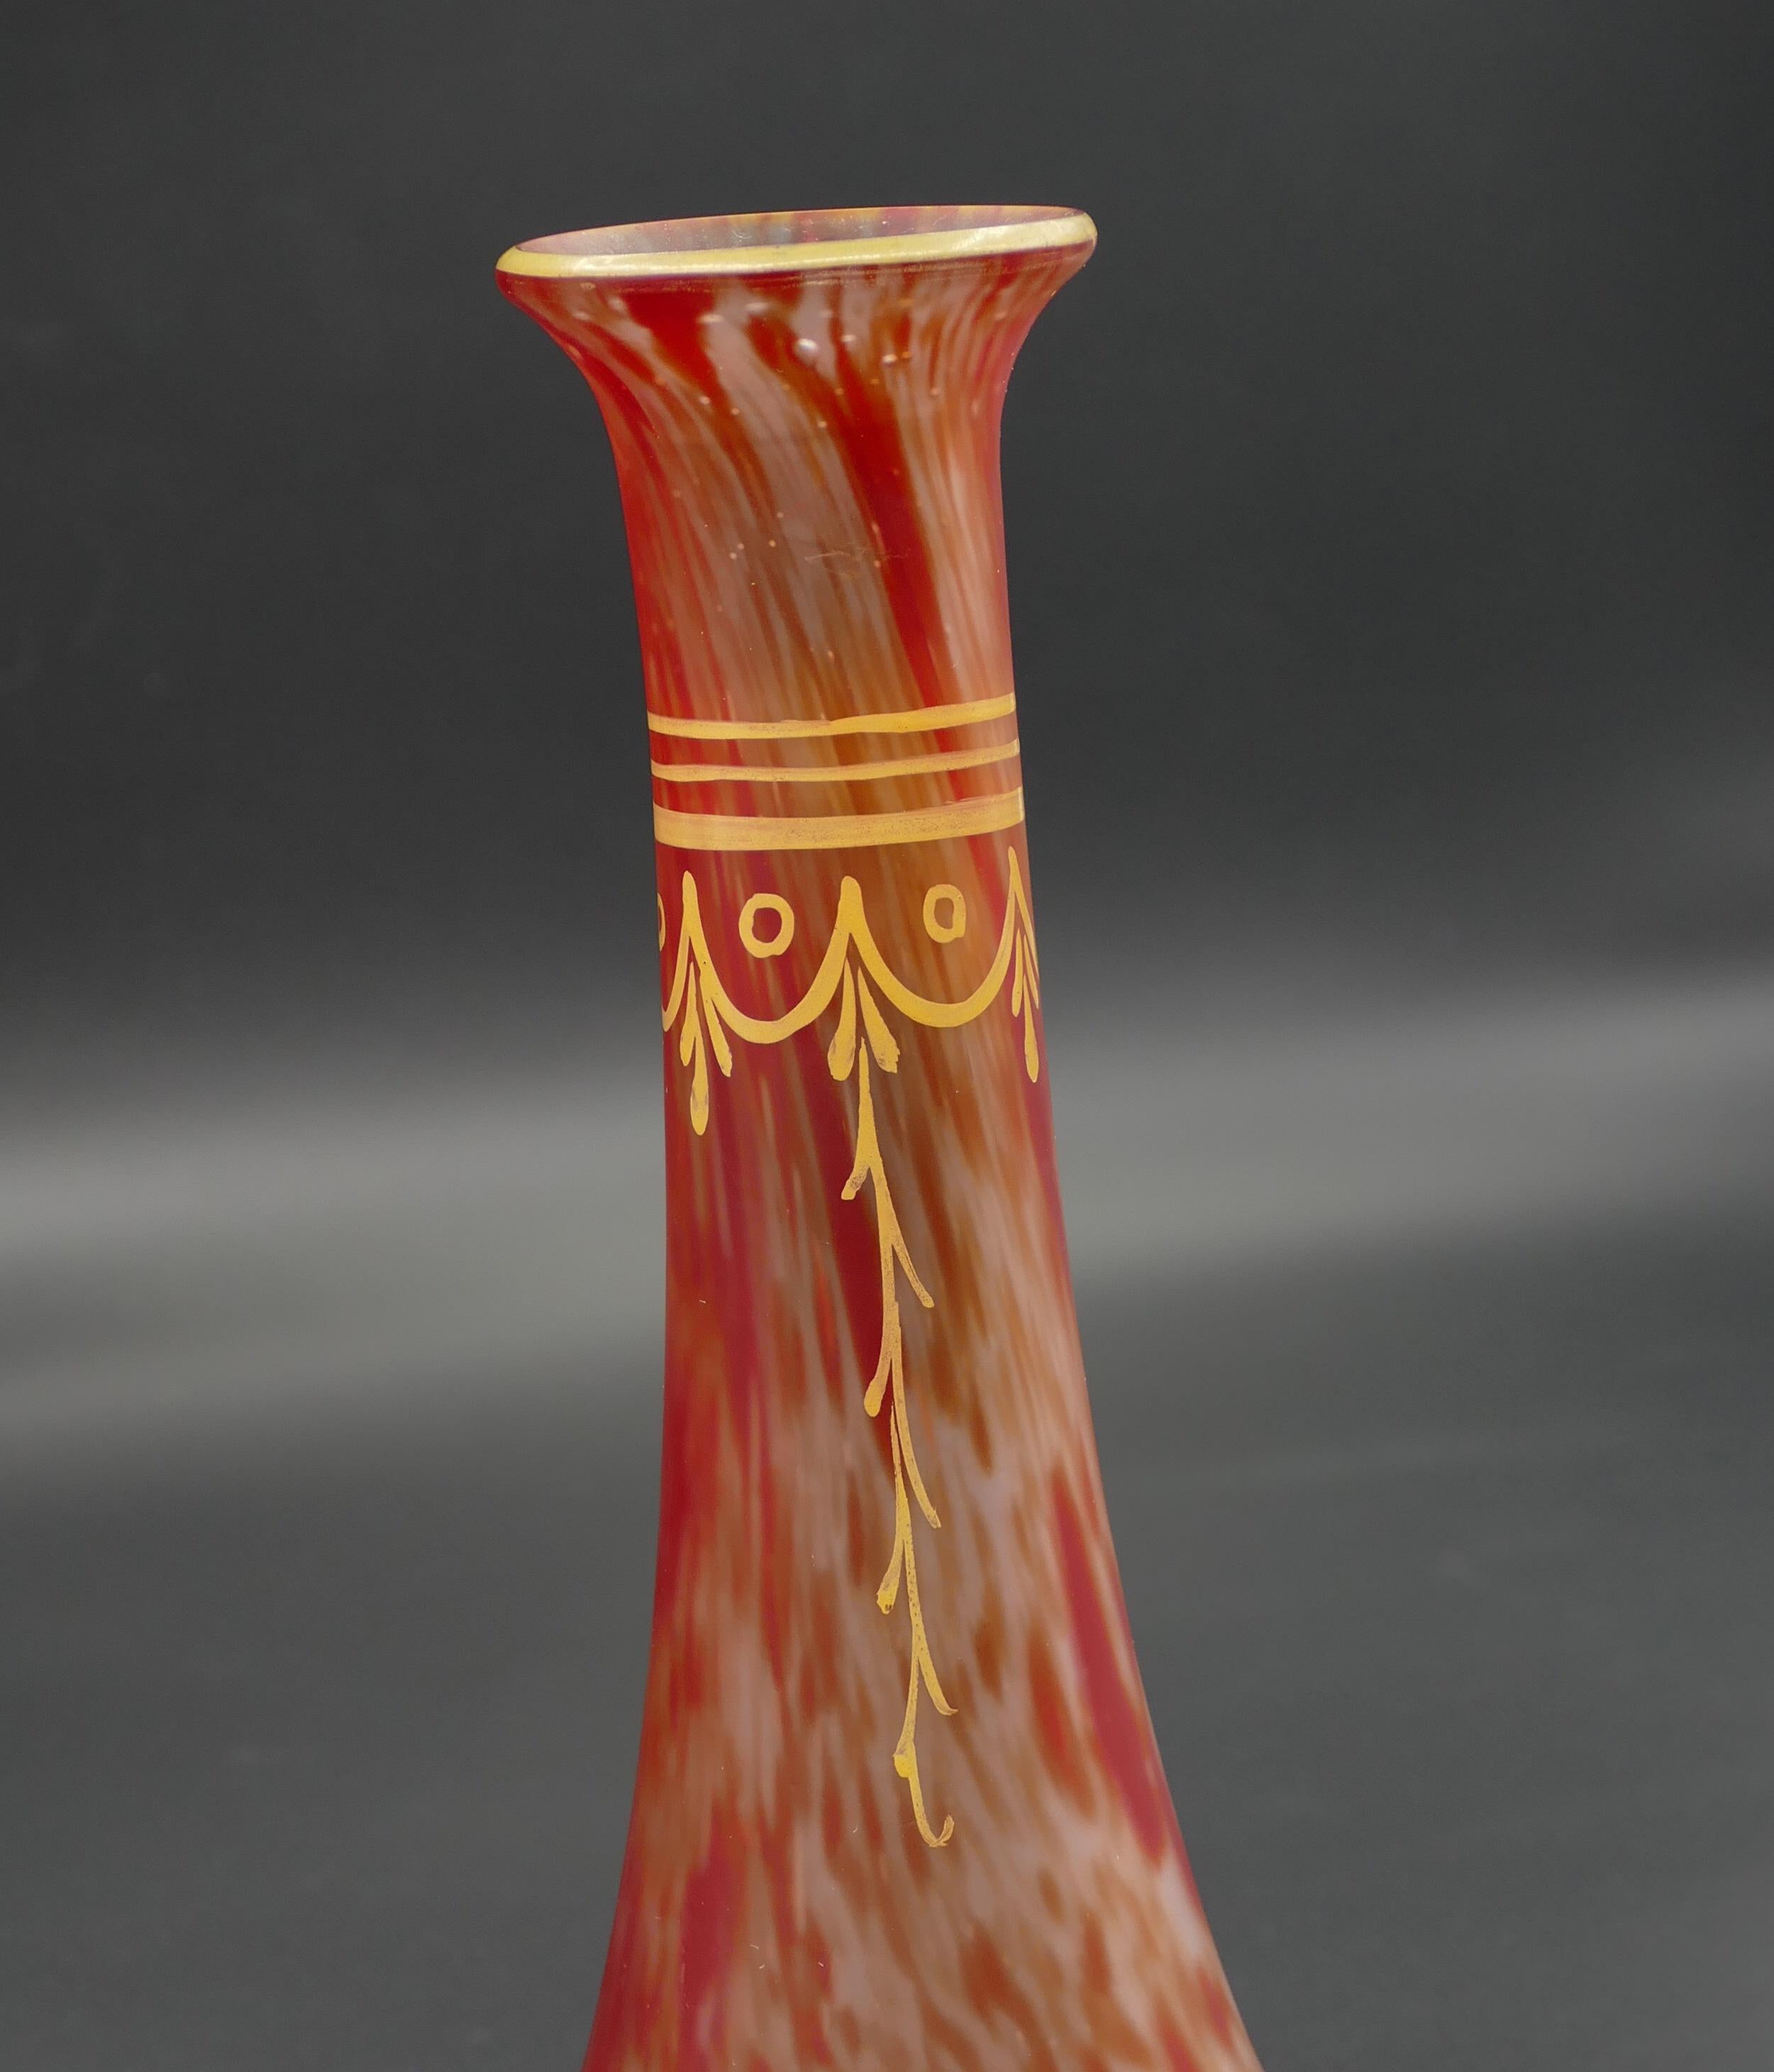 Le vase marbré rouge est un objet décoratif original réalisé dans la première décennie du XXe siècle.

Fabriqué en France. 

Verre original incolore mat avec marbrure rouge fondue et peinture ornementale jaune.

Signé : Leg.

État neuf.